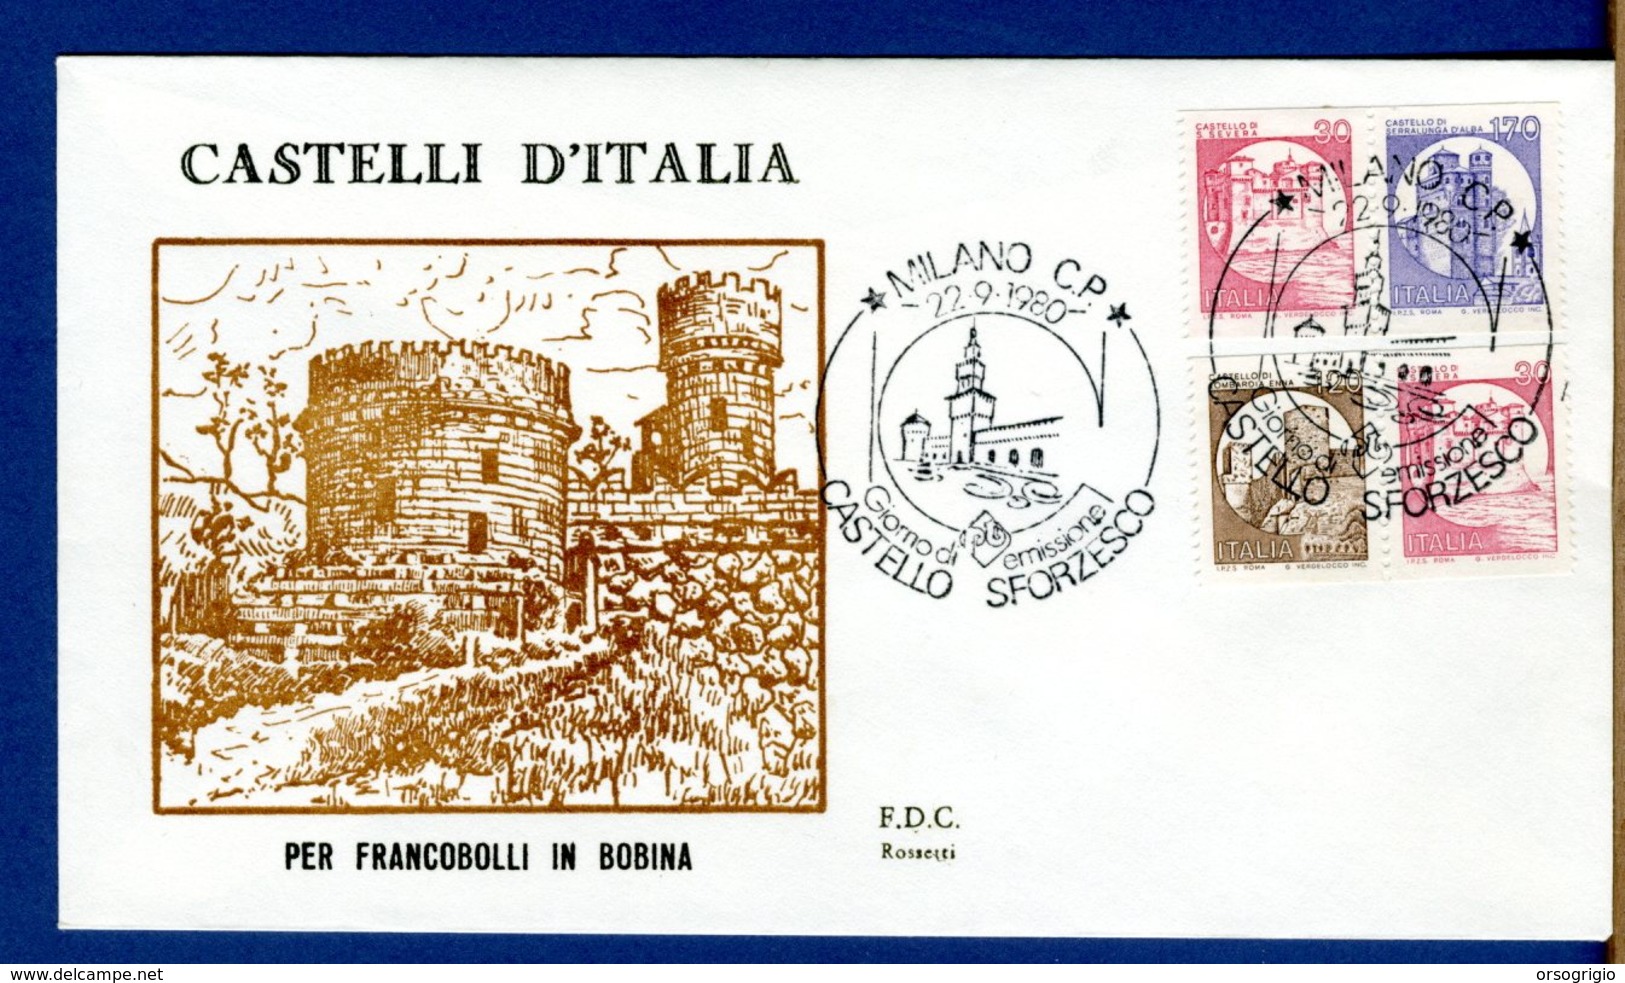 ITALIA - FDC - 1980 - CASTELLO SFORZESCO - CASTELLI D'ITALIA - MACCHINETTE - SUPER LUSSO - FDC